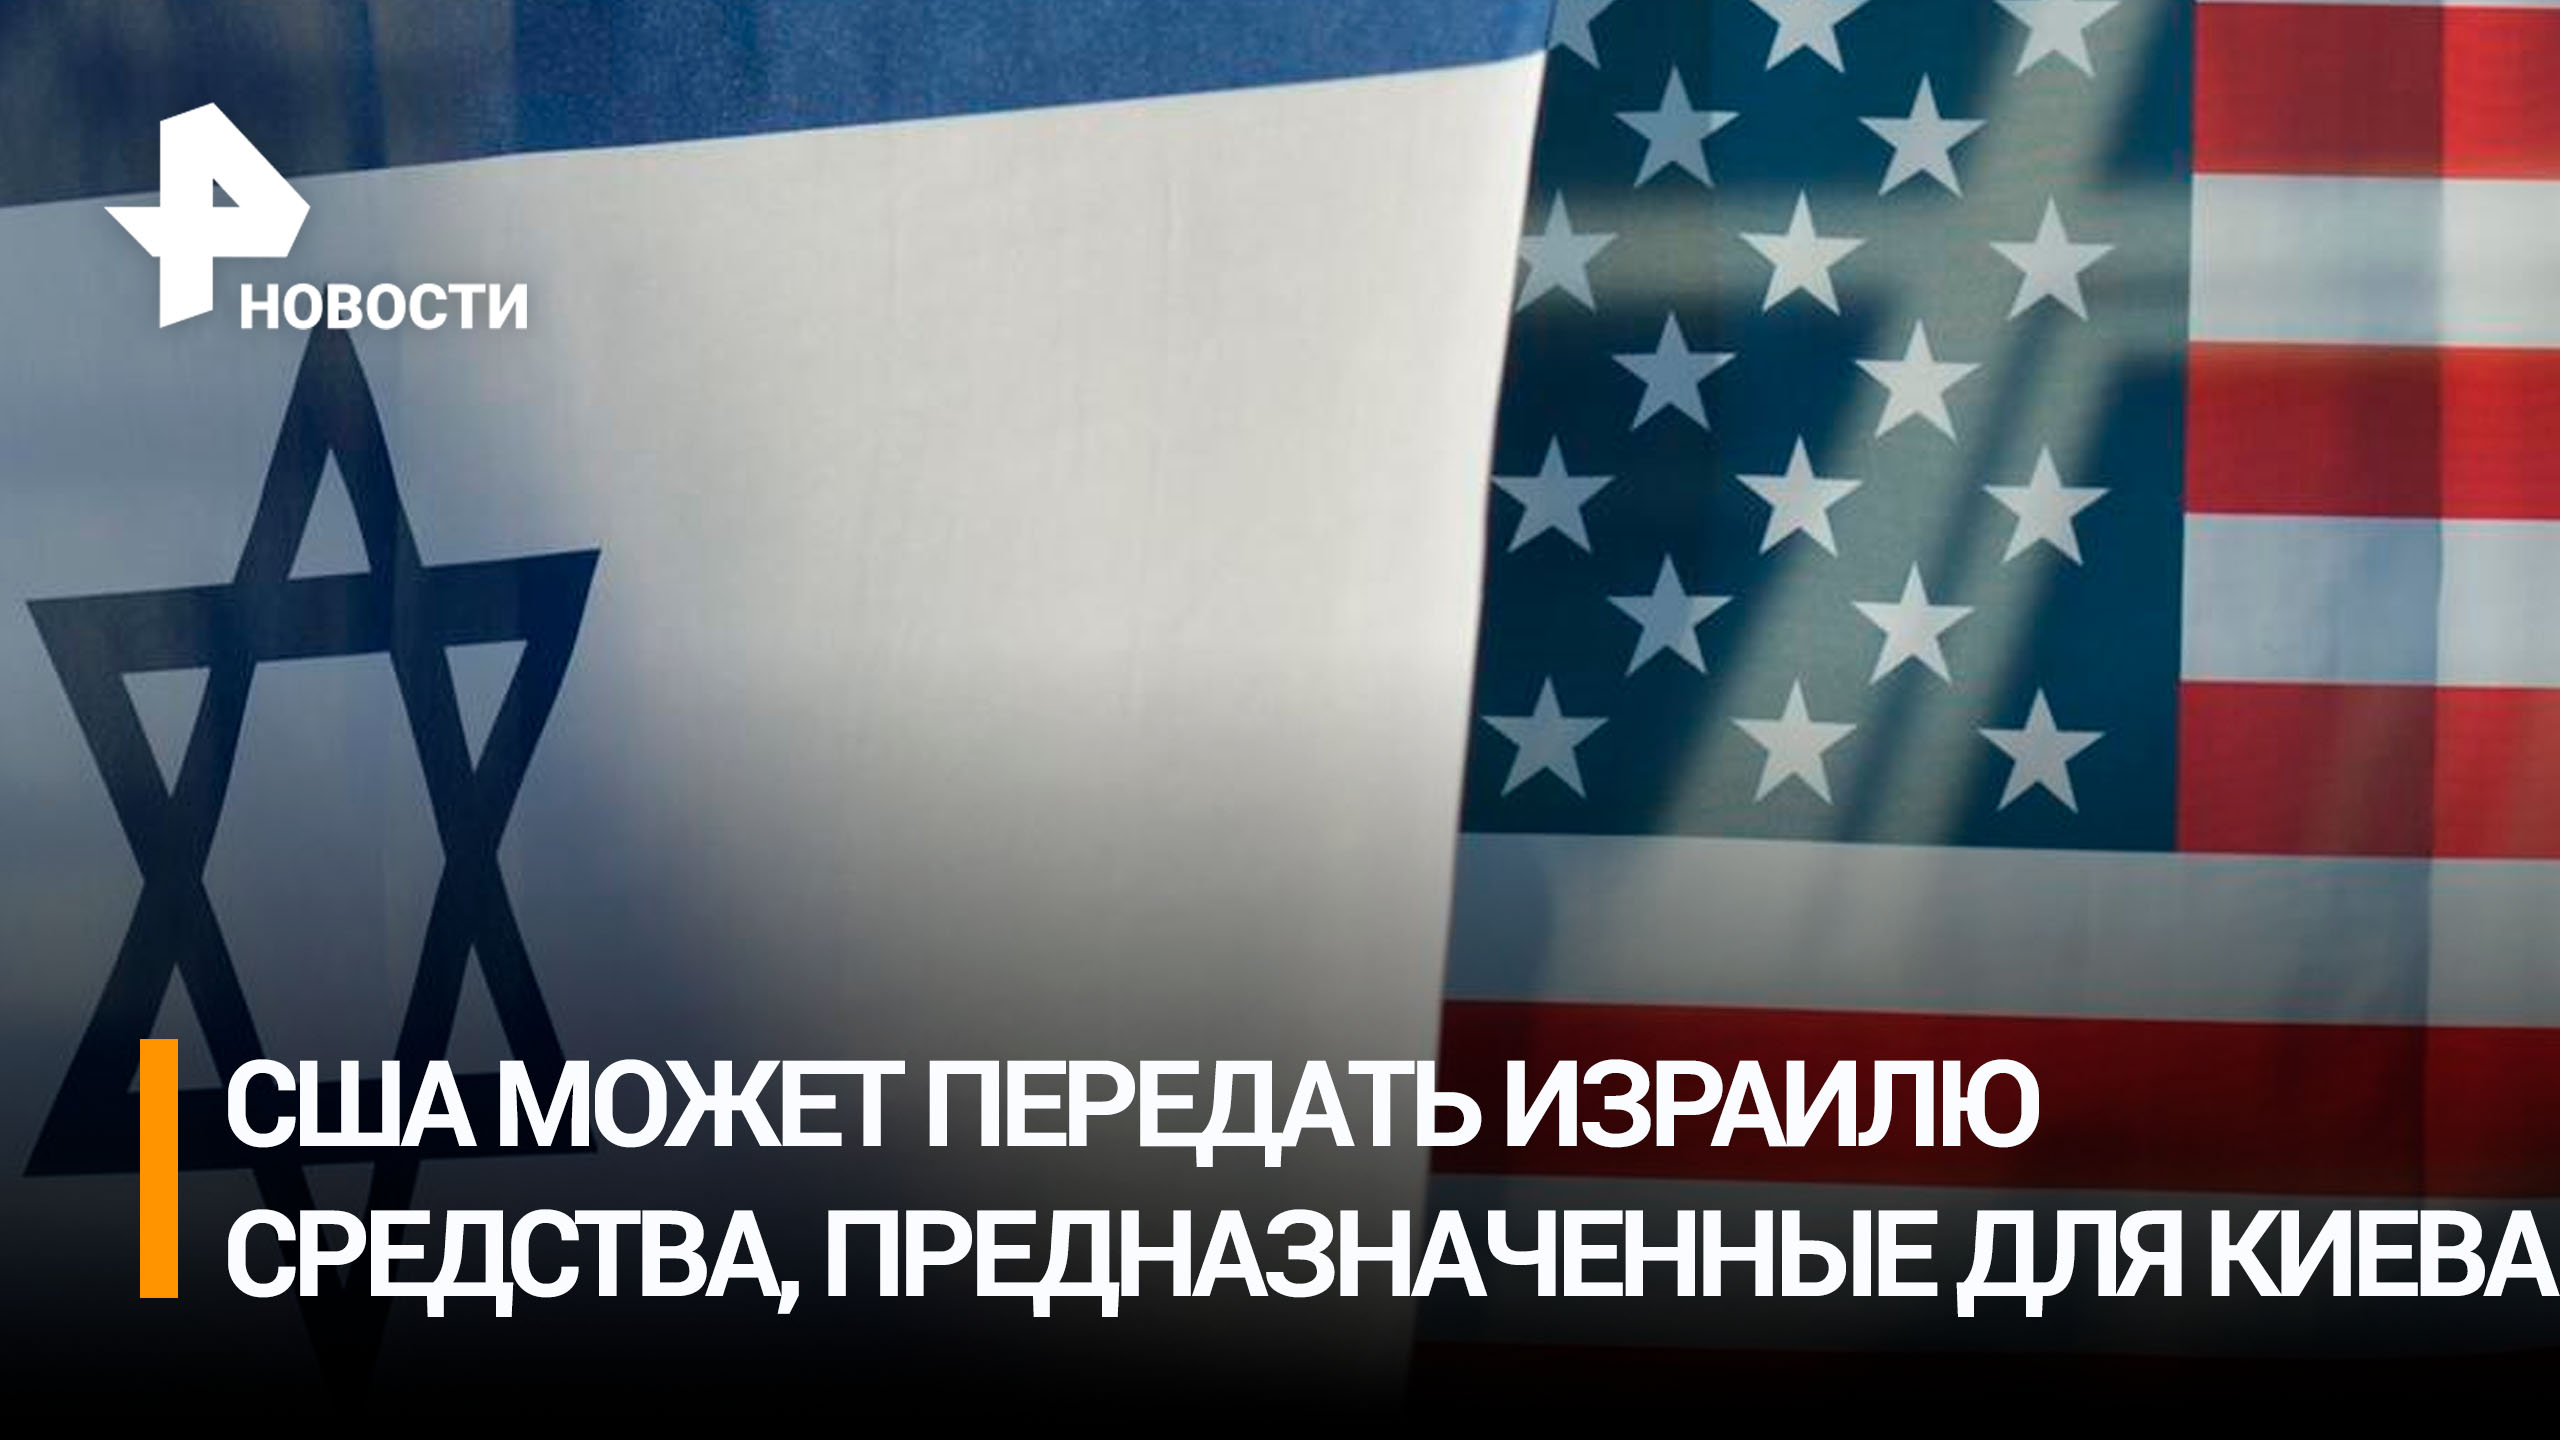 В США предложили передать Израилю предназначенные для Киева деньги / РЕН НОВОСТИ